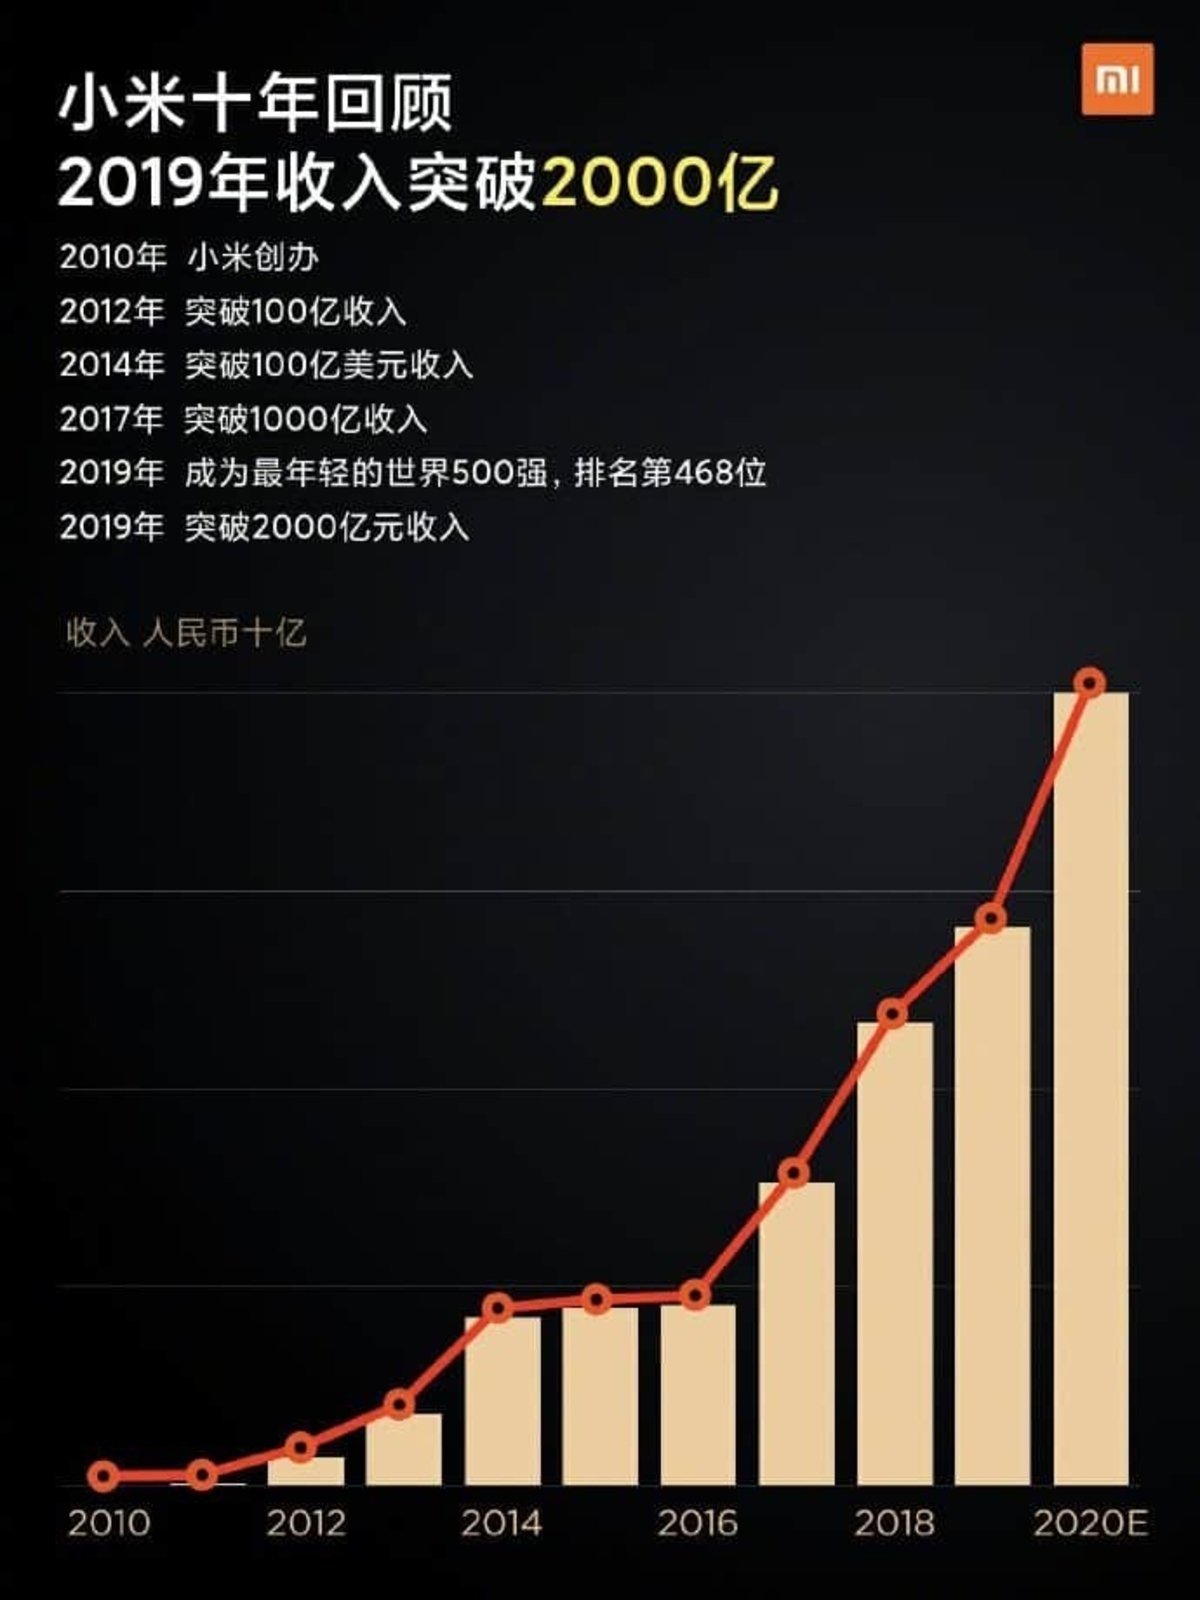 Lei Jun presume de las cifras de Xiaomi: 28.000 millones y récord en 2019